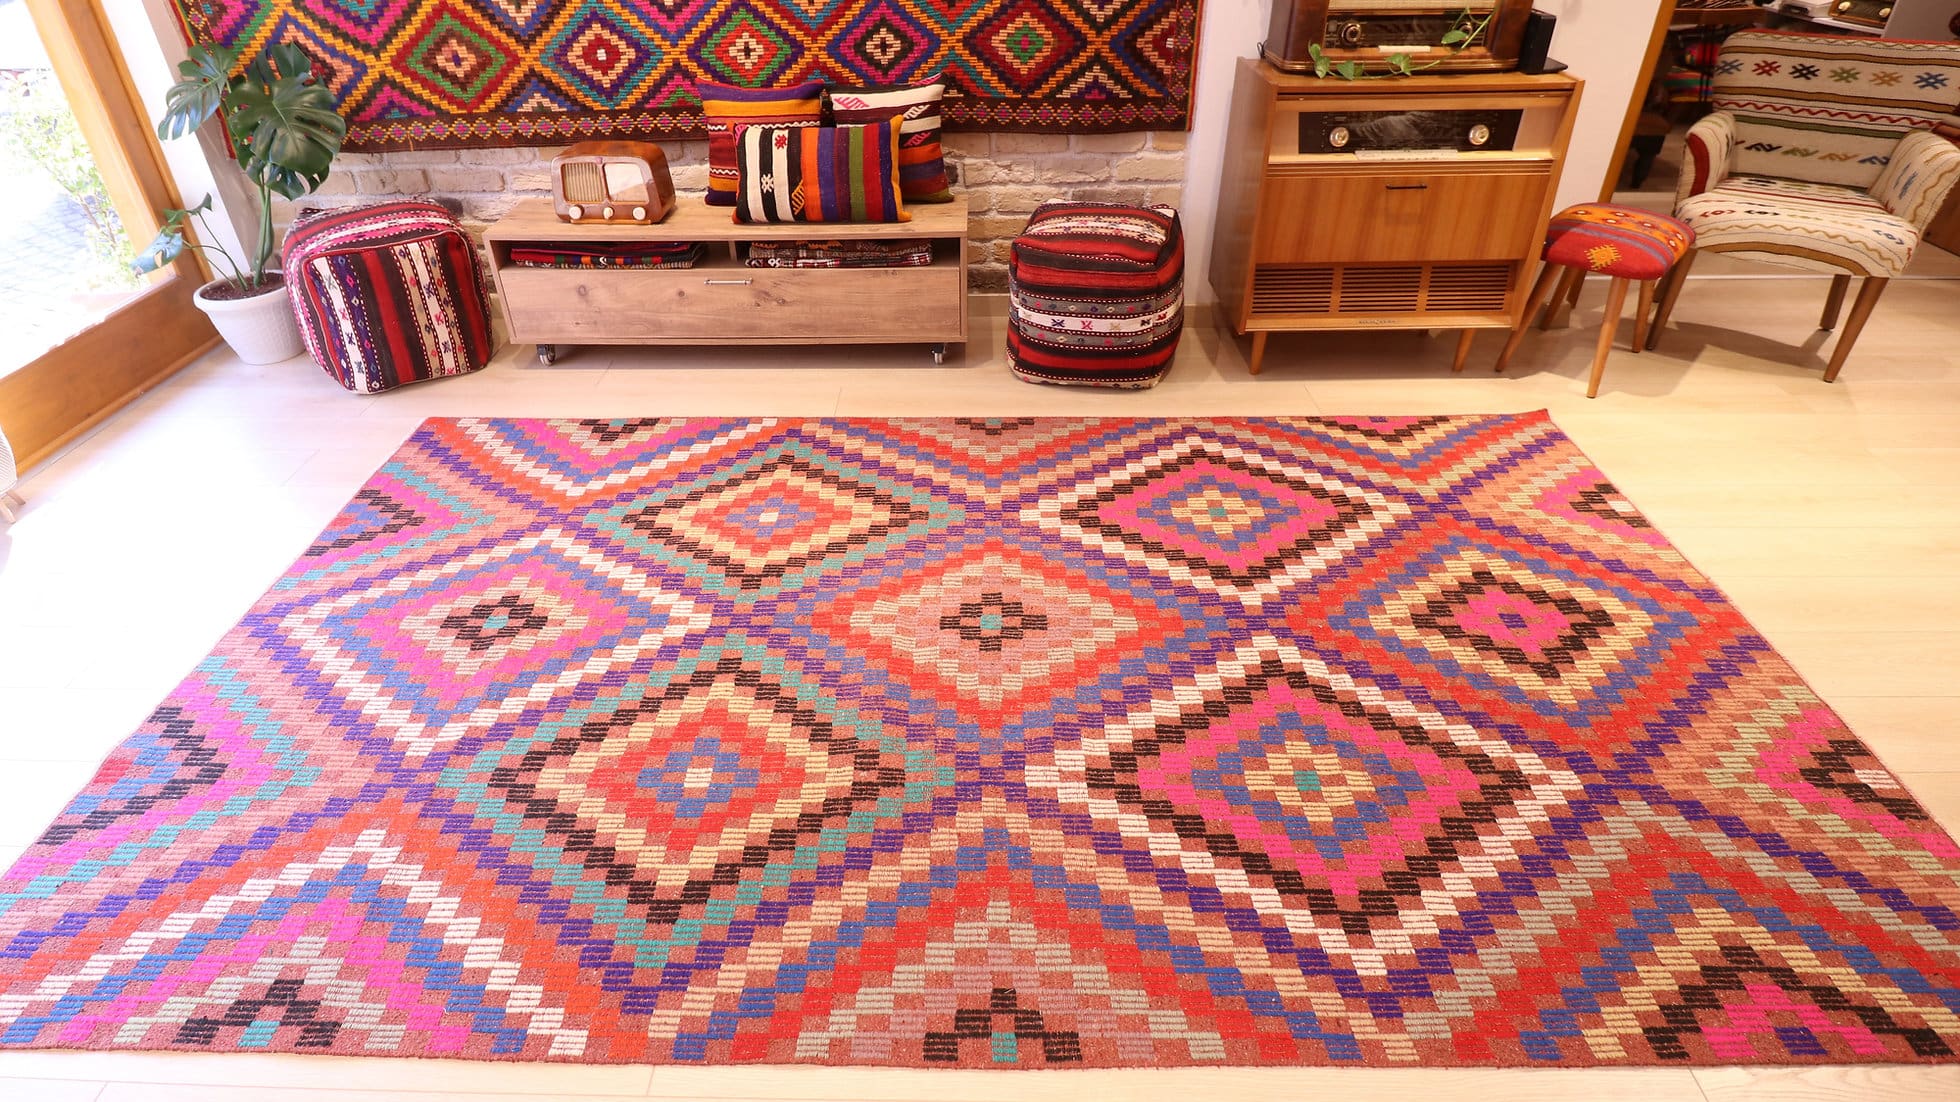 Vintage tribal Kilim rug in pink, blue, purple